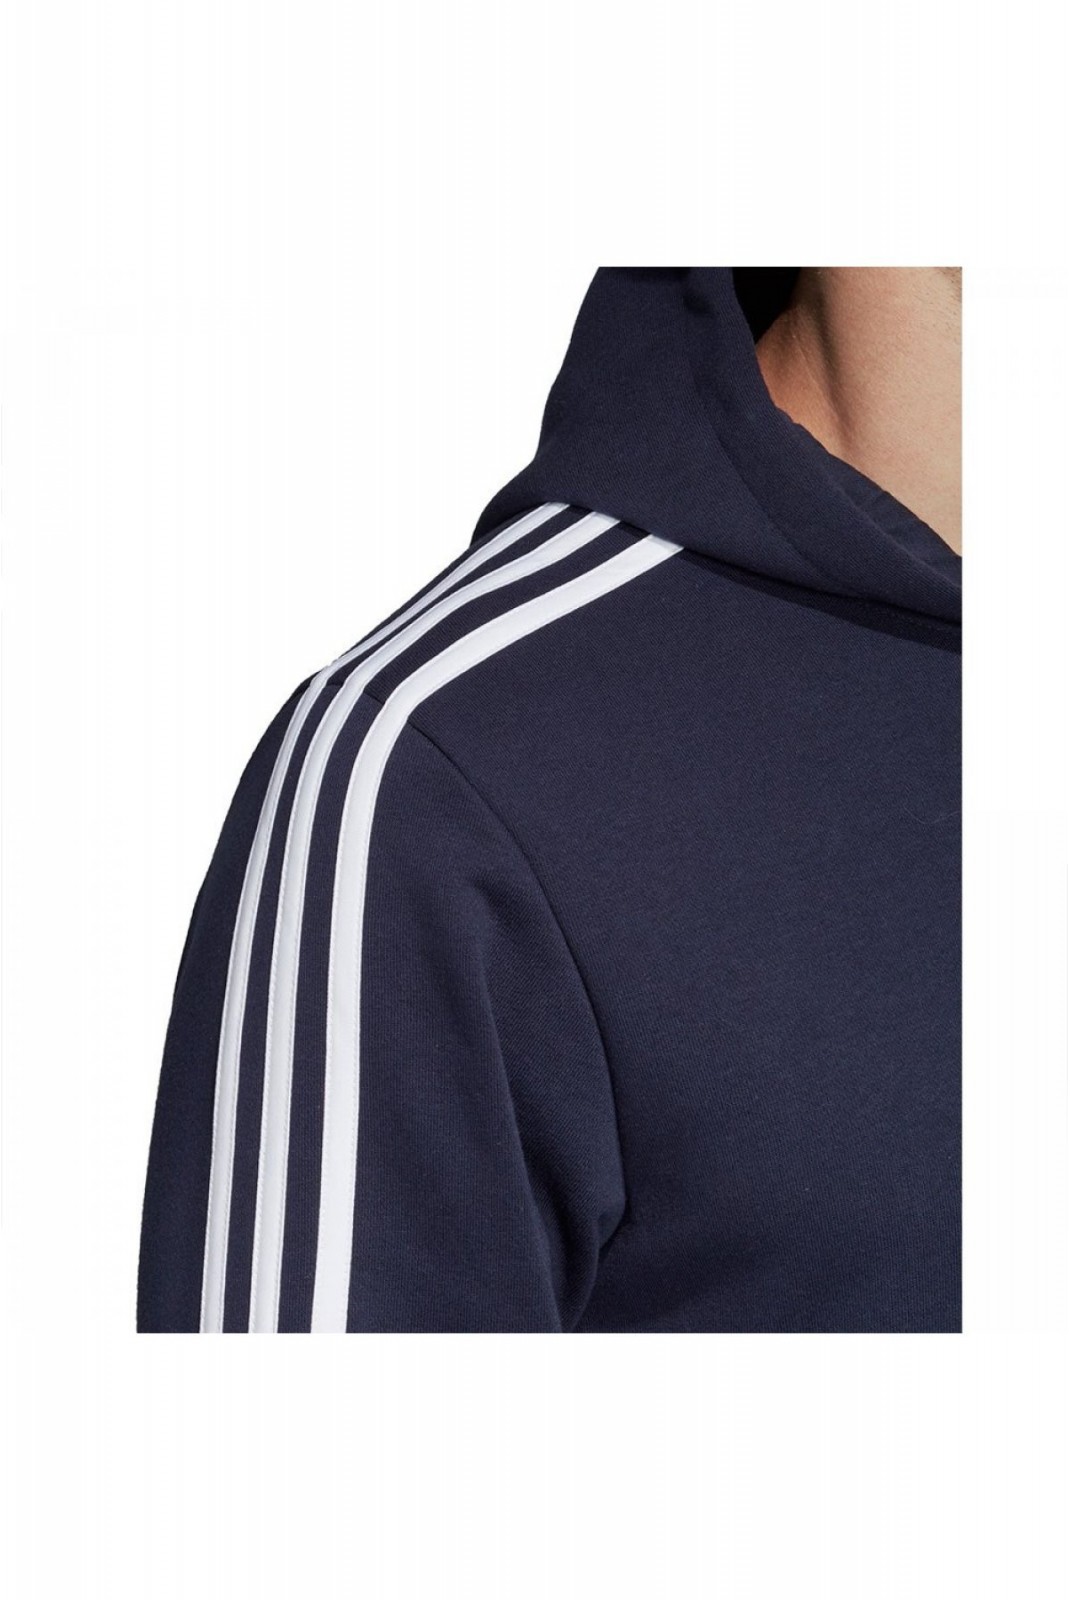 Sweat zippée à capuche  Adidas LEGINK/WHITE DU0471